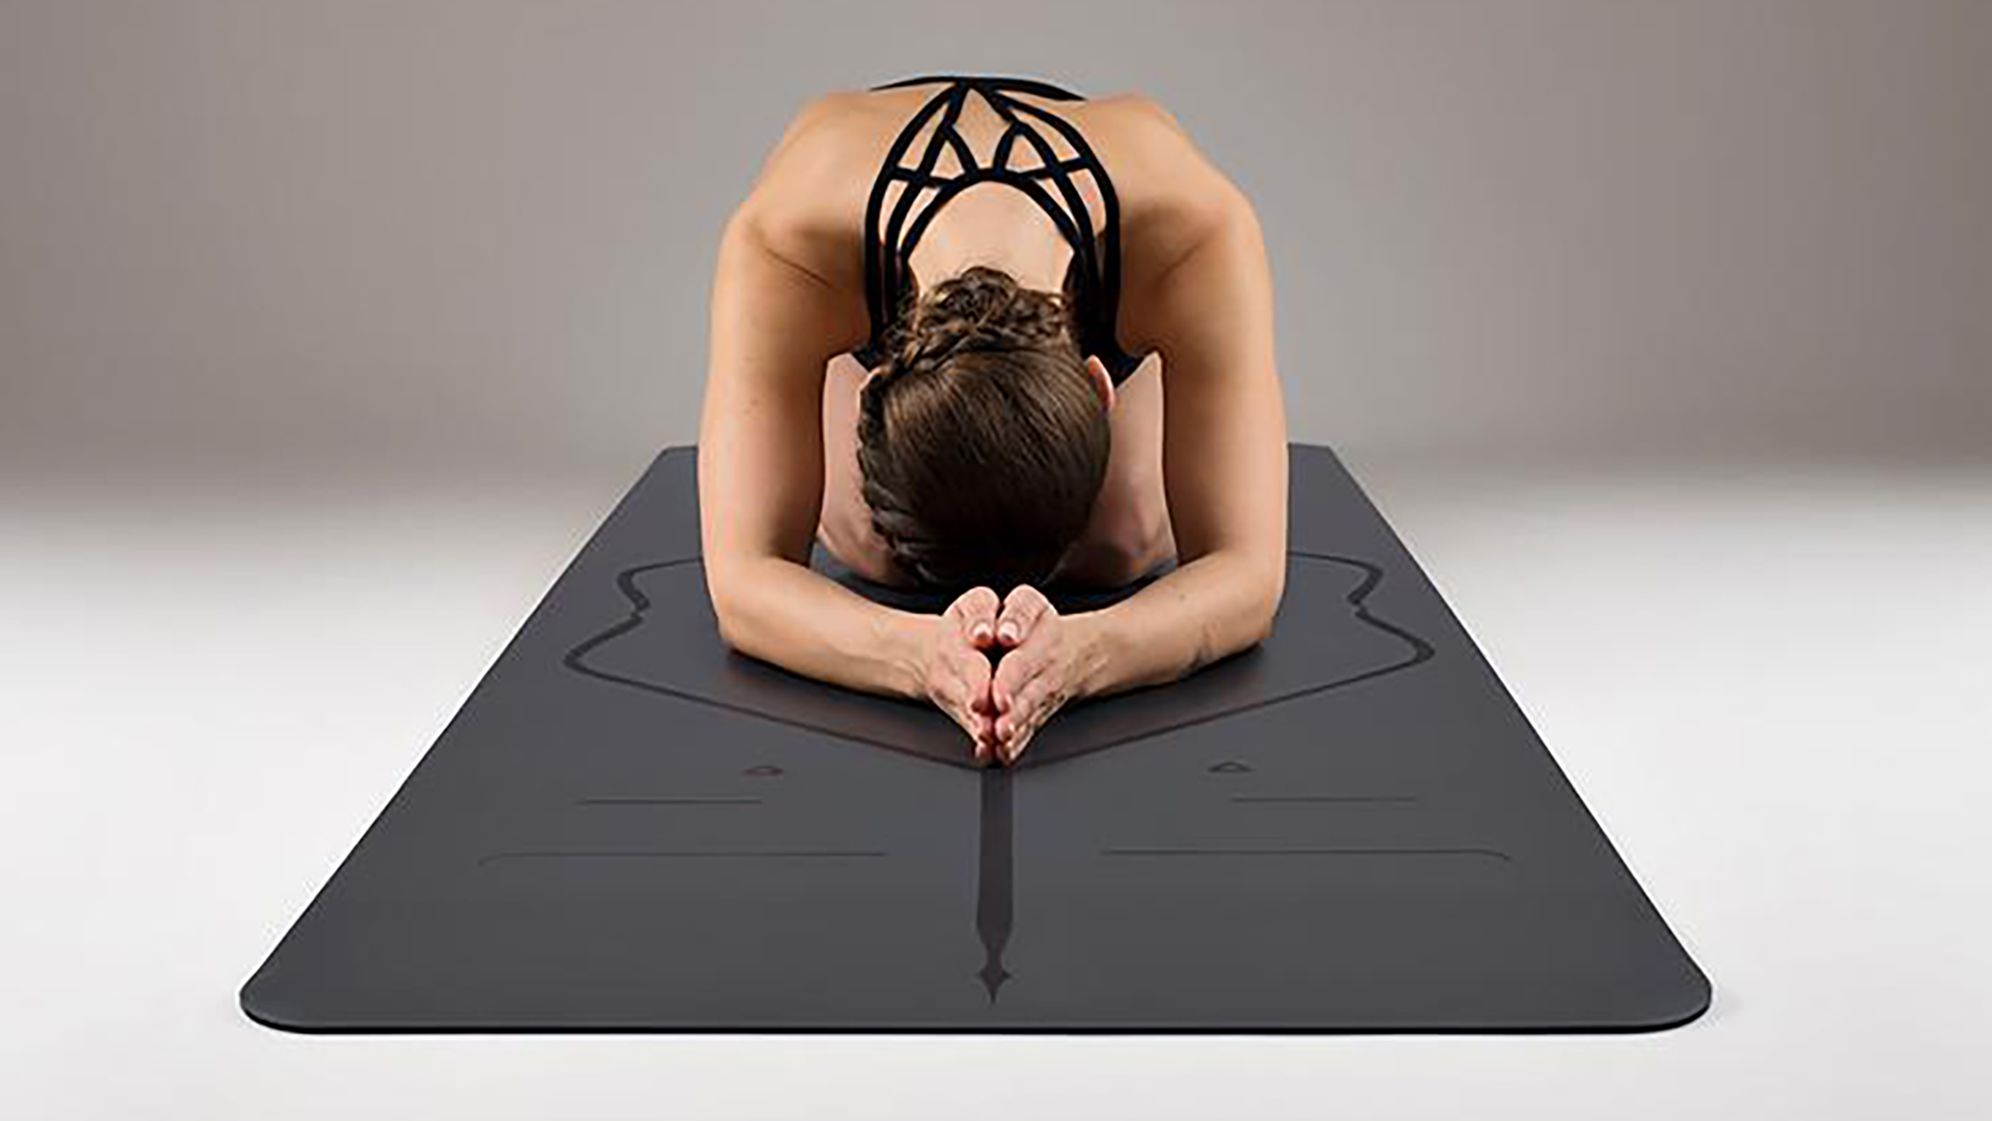 Liforme sale: Get our favorite beginner yoga mat over $50 off